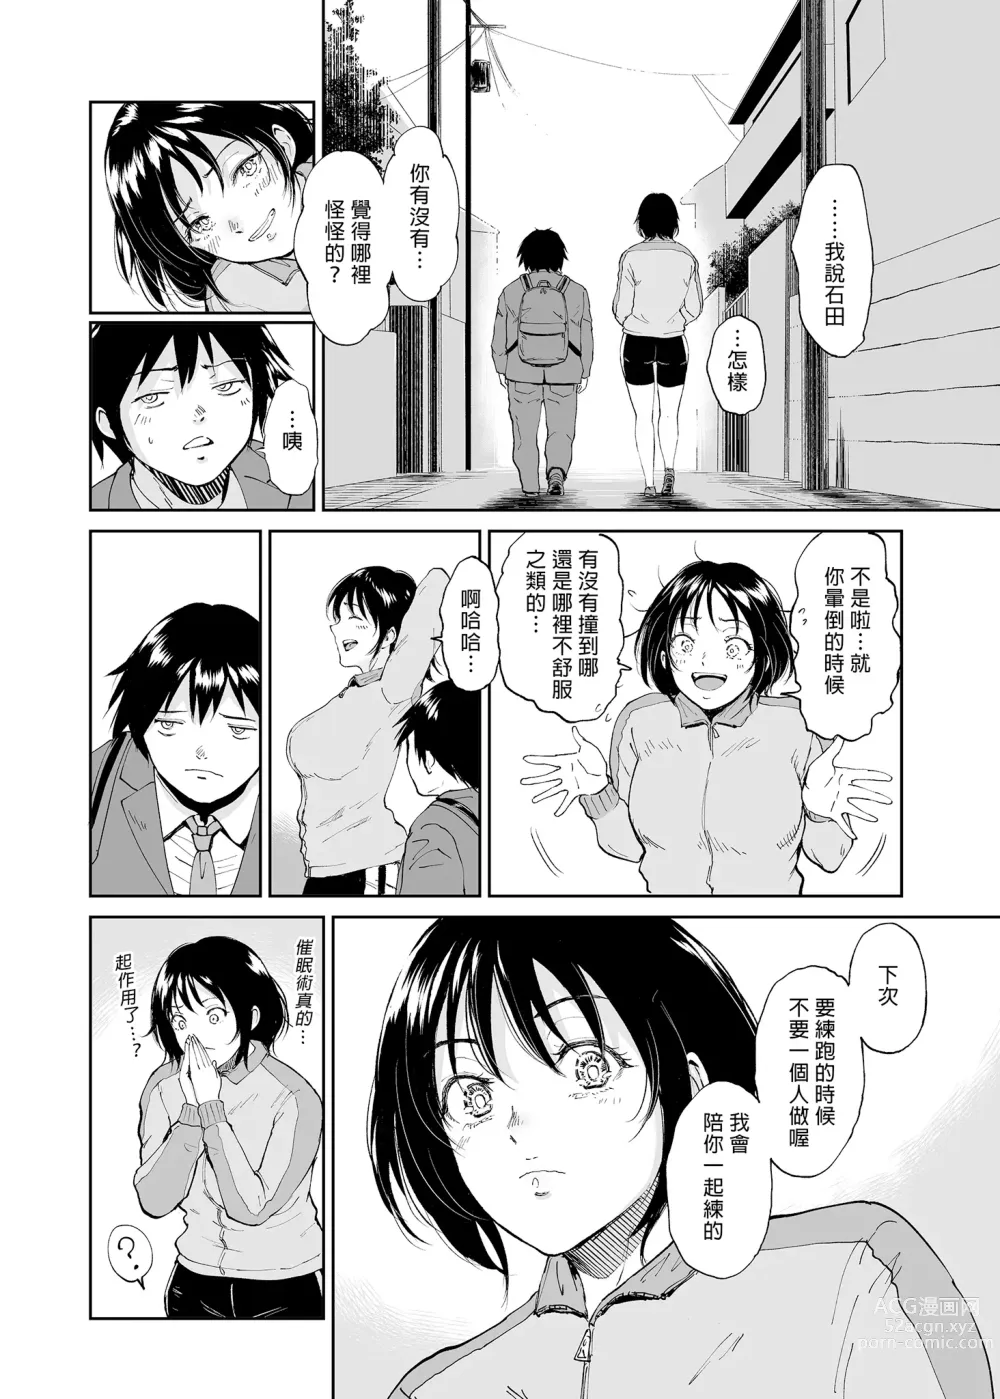 Page 38 of doujinshi Minkan Gasshuku Rikujou Joshi Niki Minori